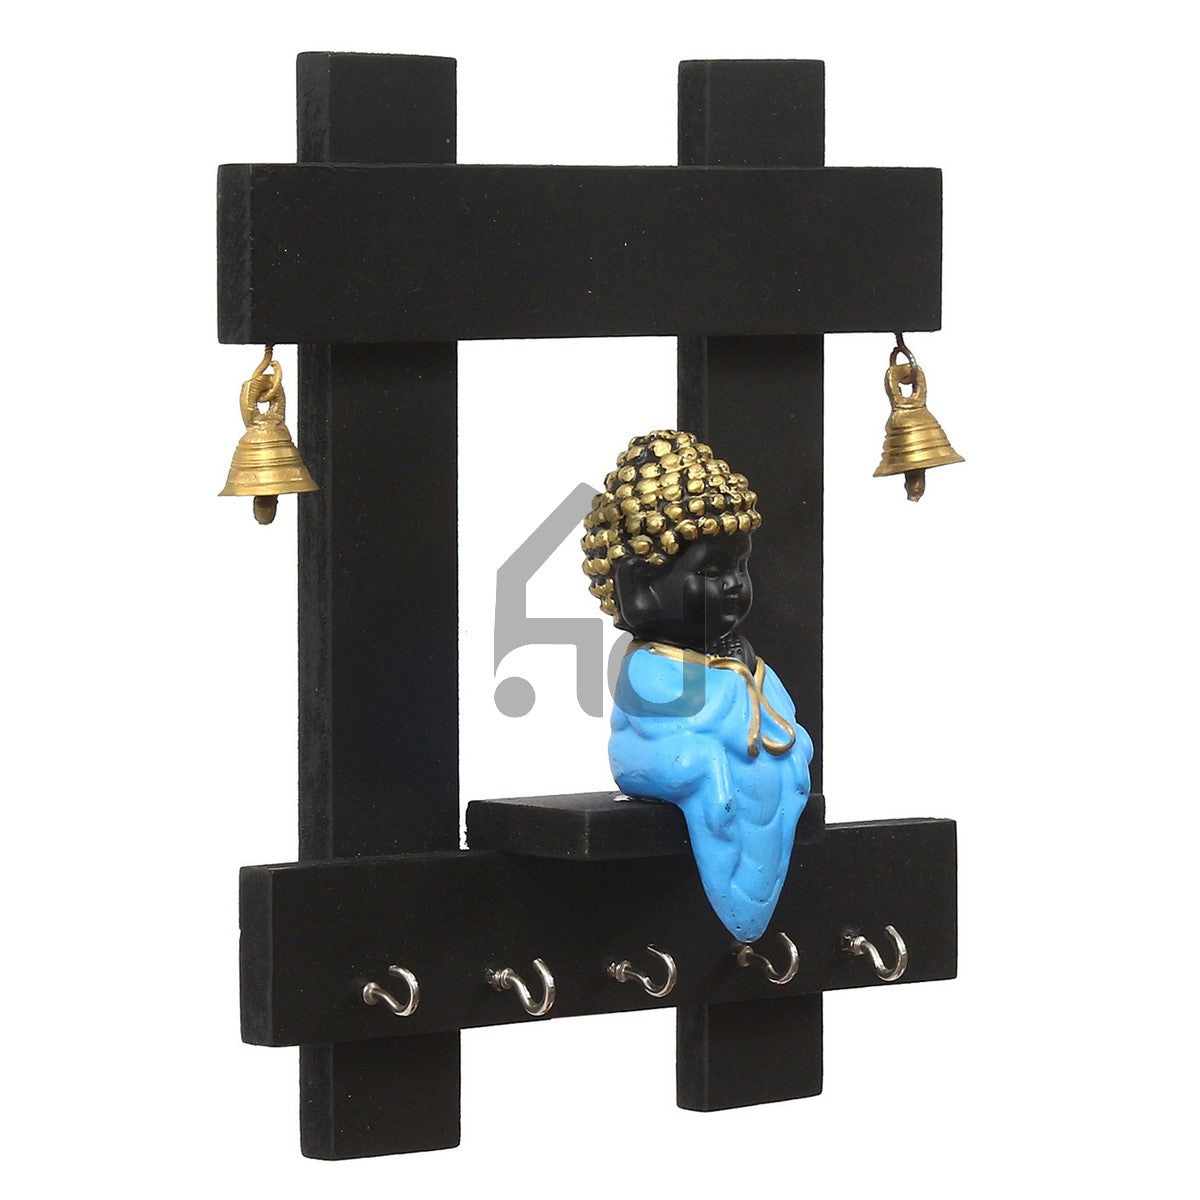 Blue and Black Peaceful Monk Buddha Idol Sitting Wooden Keyholder with 5 Key hooks 5